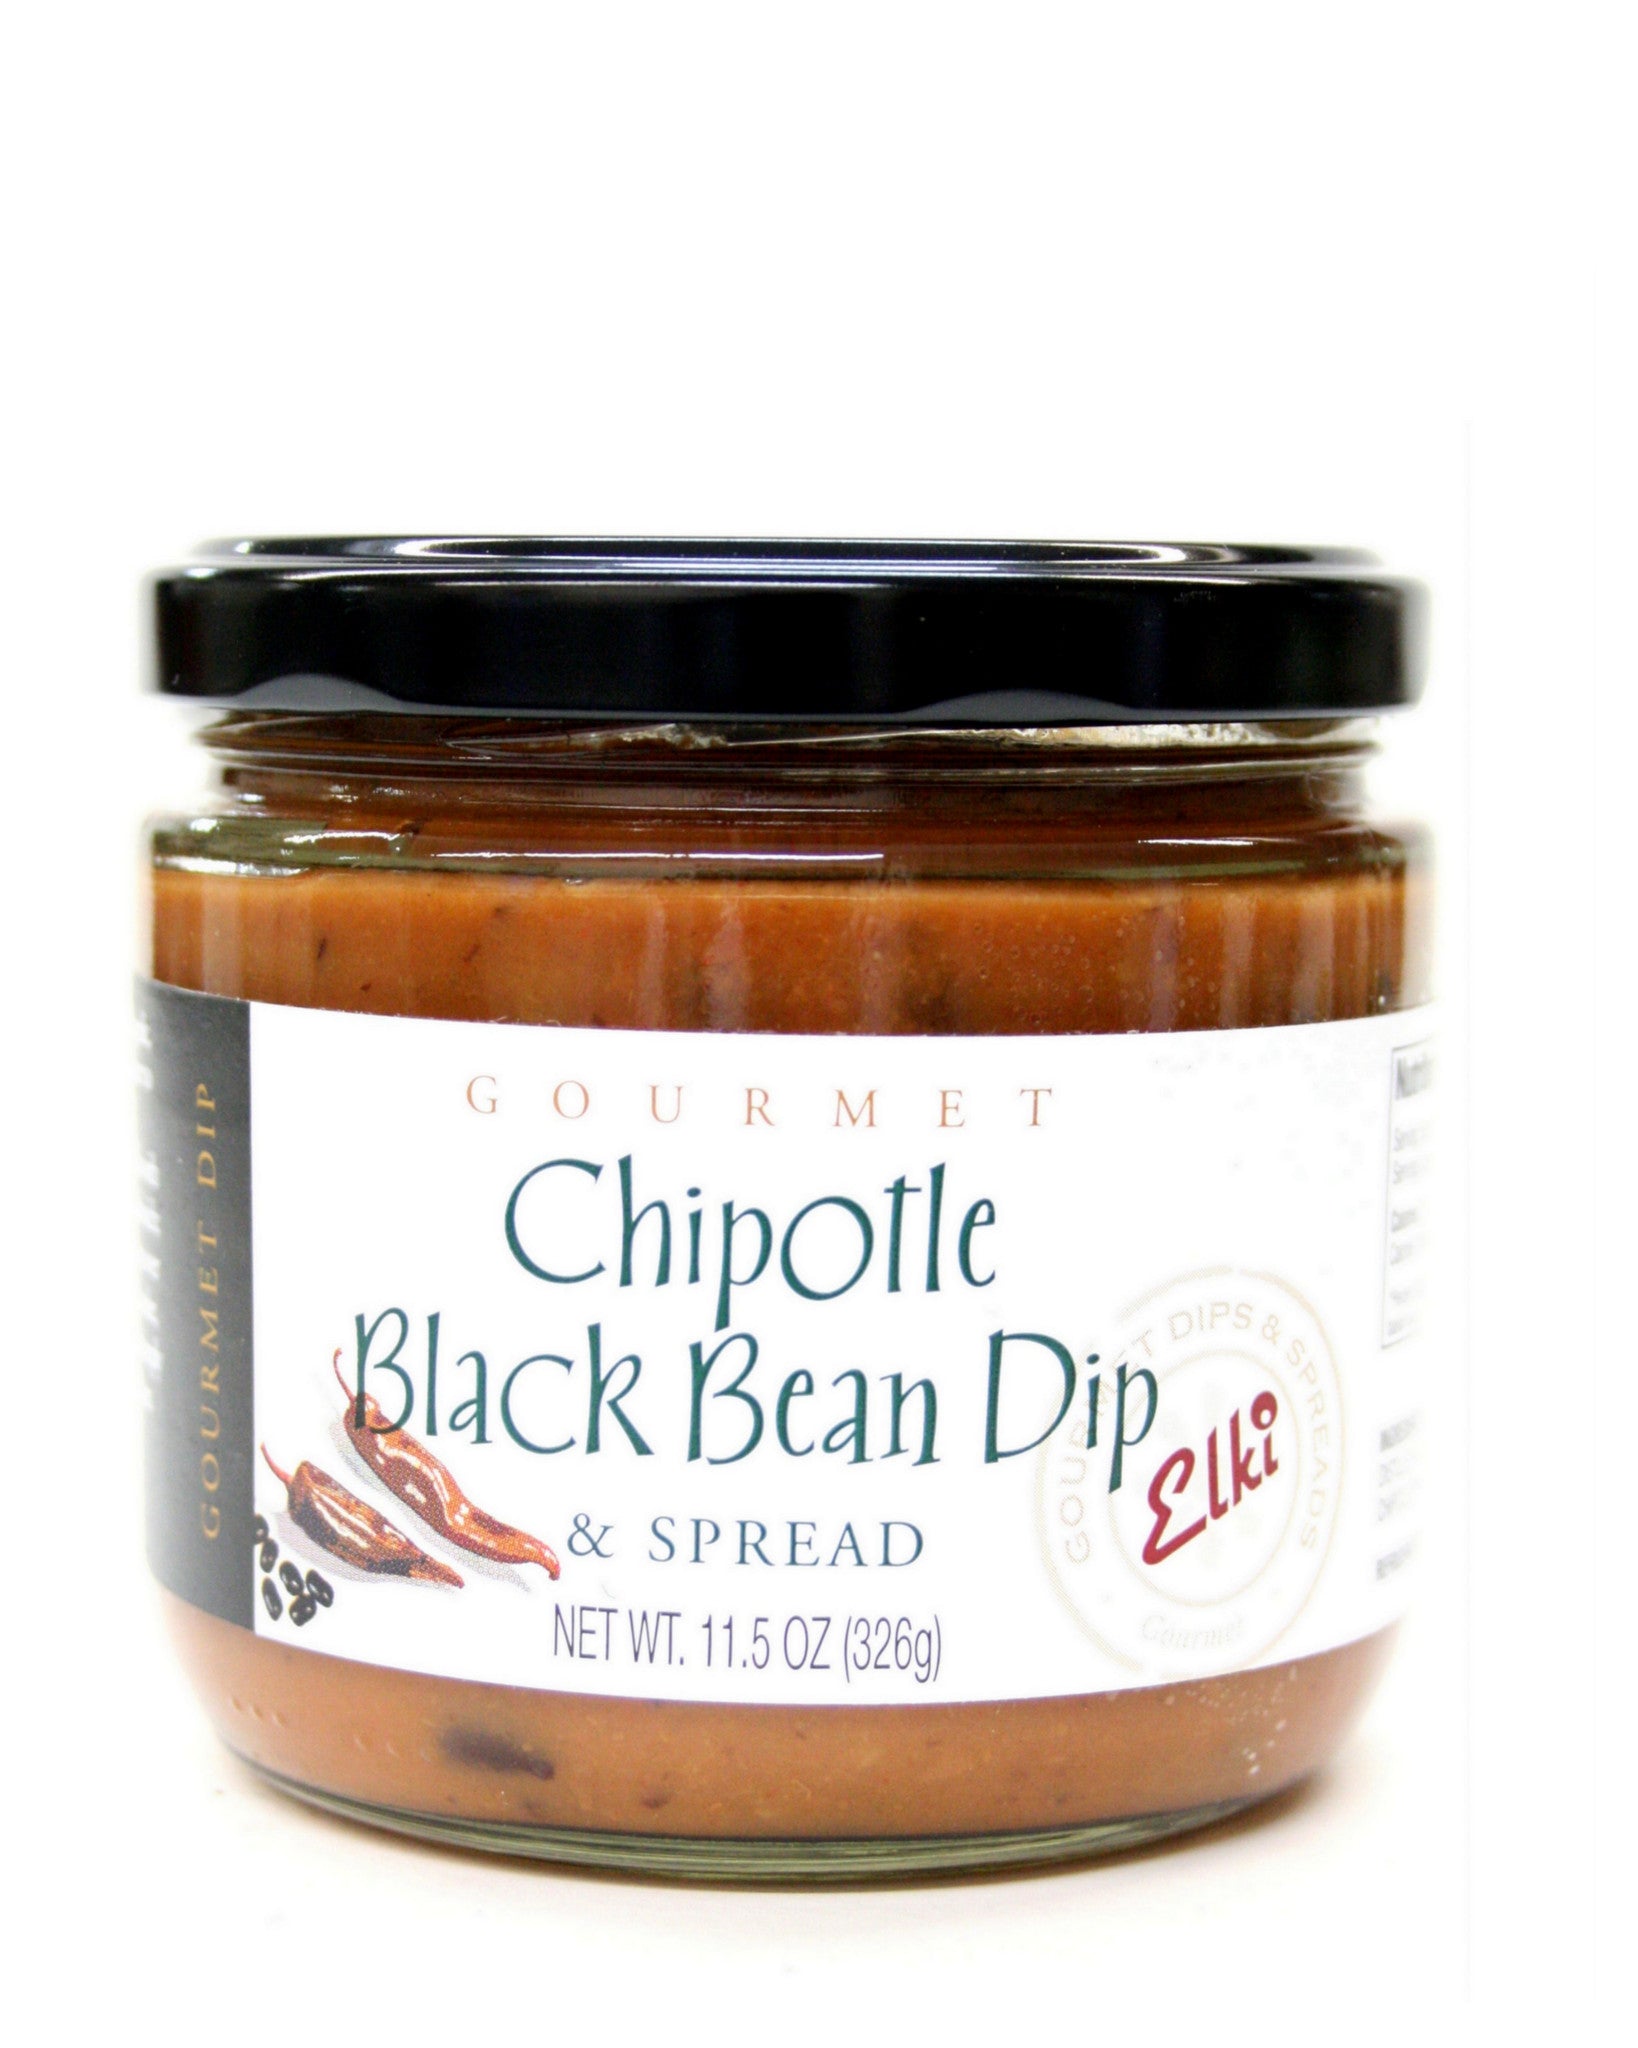 Elki Chipotle Black Bean Dip & Spread | countrymercantile